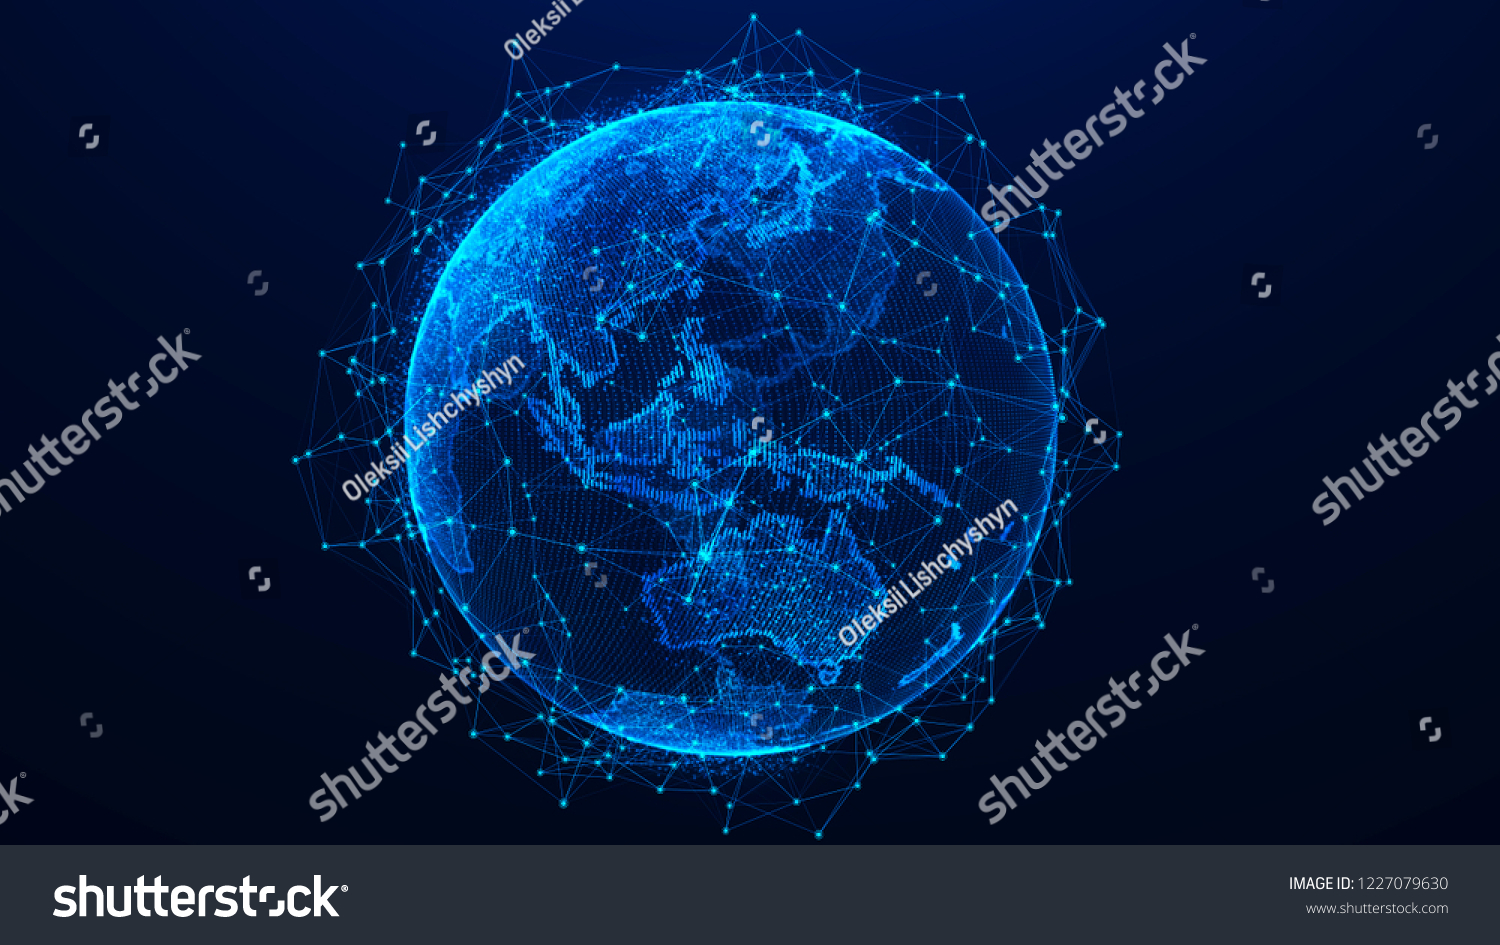 グローバルネットワークのコンセプト ワールドマップポイント 地球の地球 3dレンダリング のイラスト素材